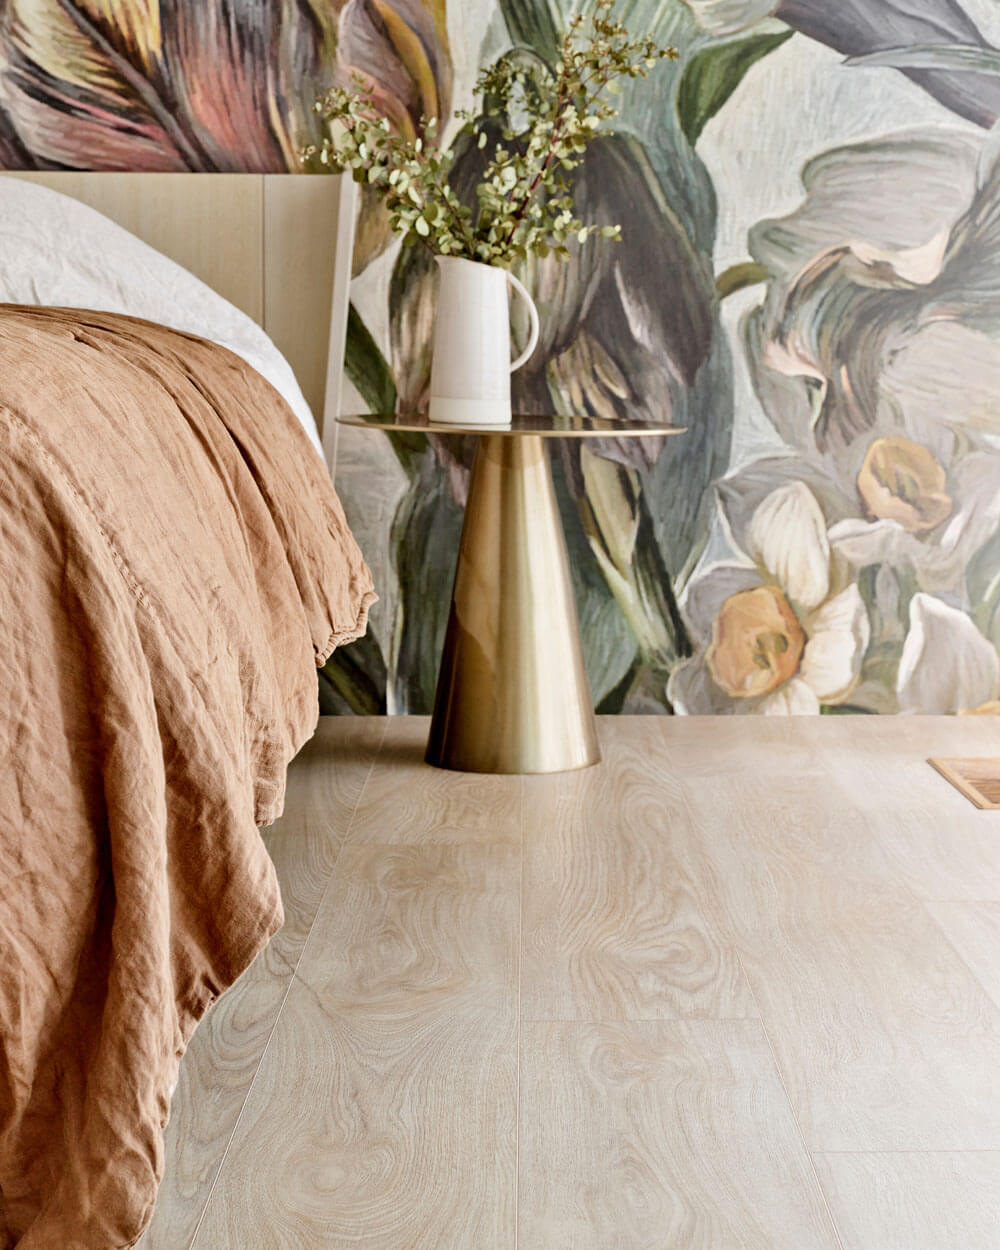 Interieur van een slaapkamer met een bed tegen een muur met bloemenbehang. De vloer die getoond wordt is de Moduleo LayRed Laurel Oak 51230 Embossed luxe vinylvloer.